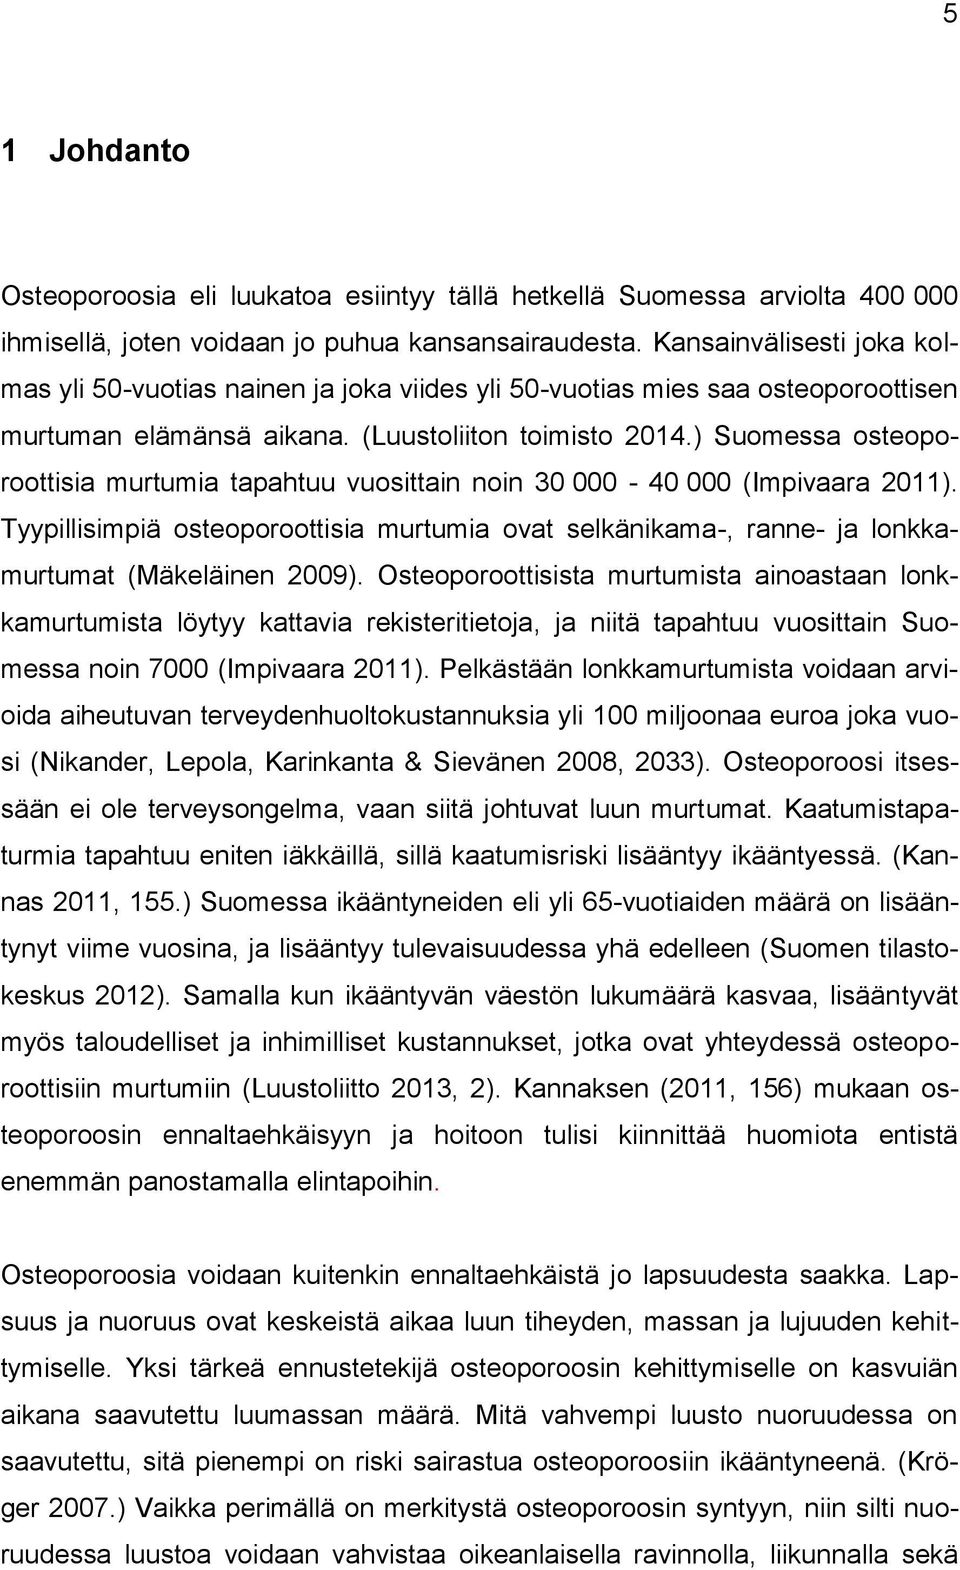 ) Suomessa osteoporoottisia murtumia tapahtuu vuosittain noin 30 000-40 000 (Impivaara 2011). Tyypillisimpiä osteoporoottisia murtumia ovat selkänikama-, ranne- ja lonkkamurtumat (Mäkeläinen 2009).